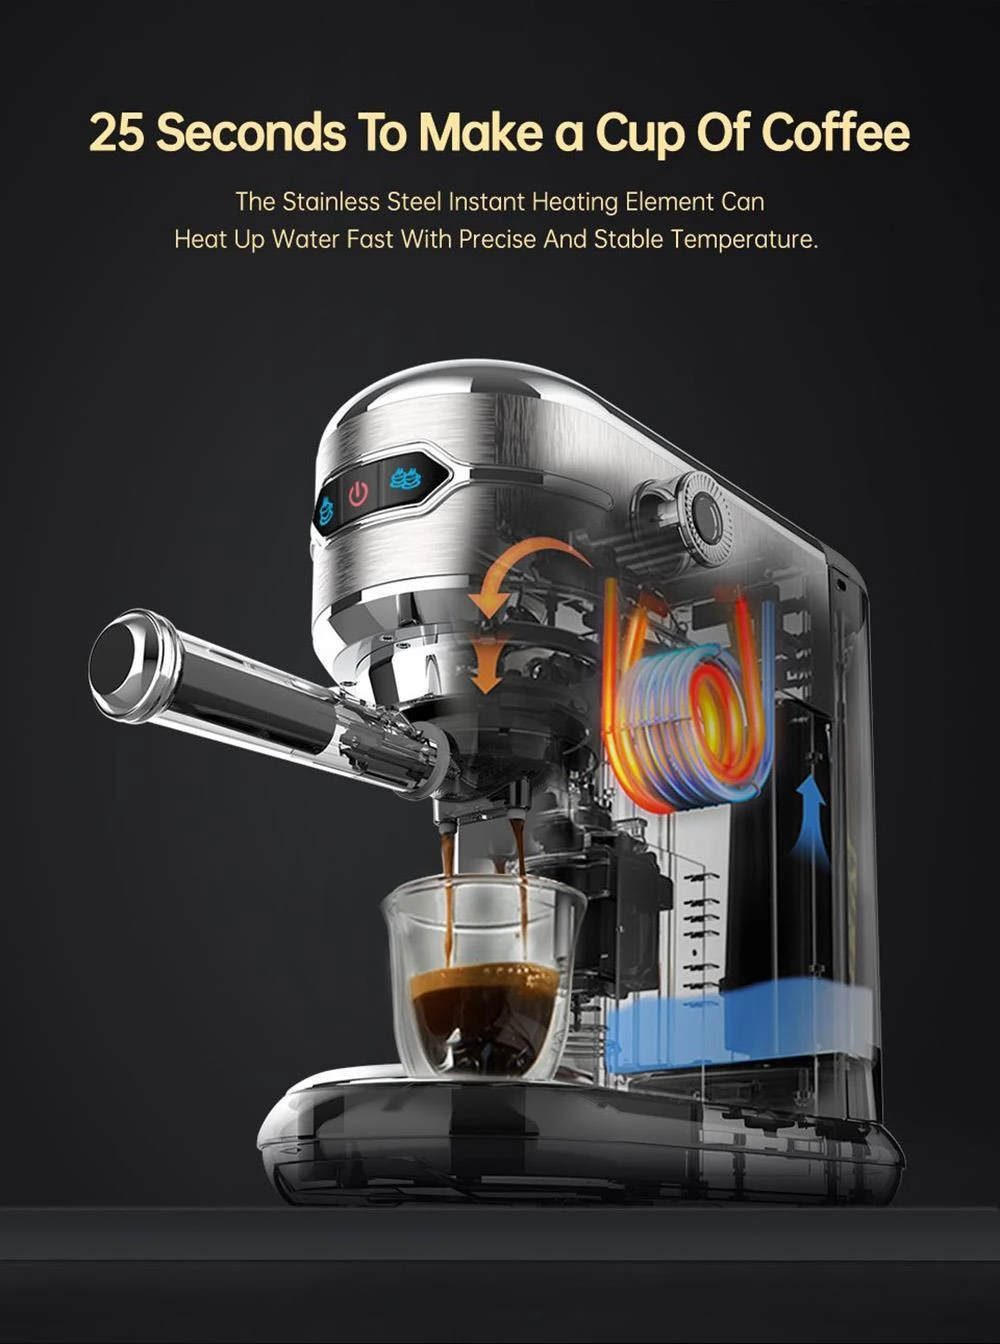 HiBREW H11 1450W Kaffeemaschine, 19 Bar Hochdruck, ESE POD & Pulver, starkes Dampfschaumsystem